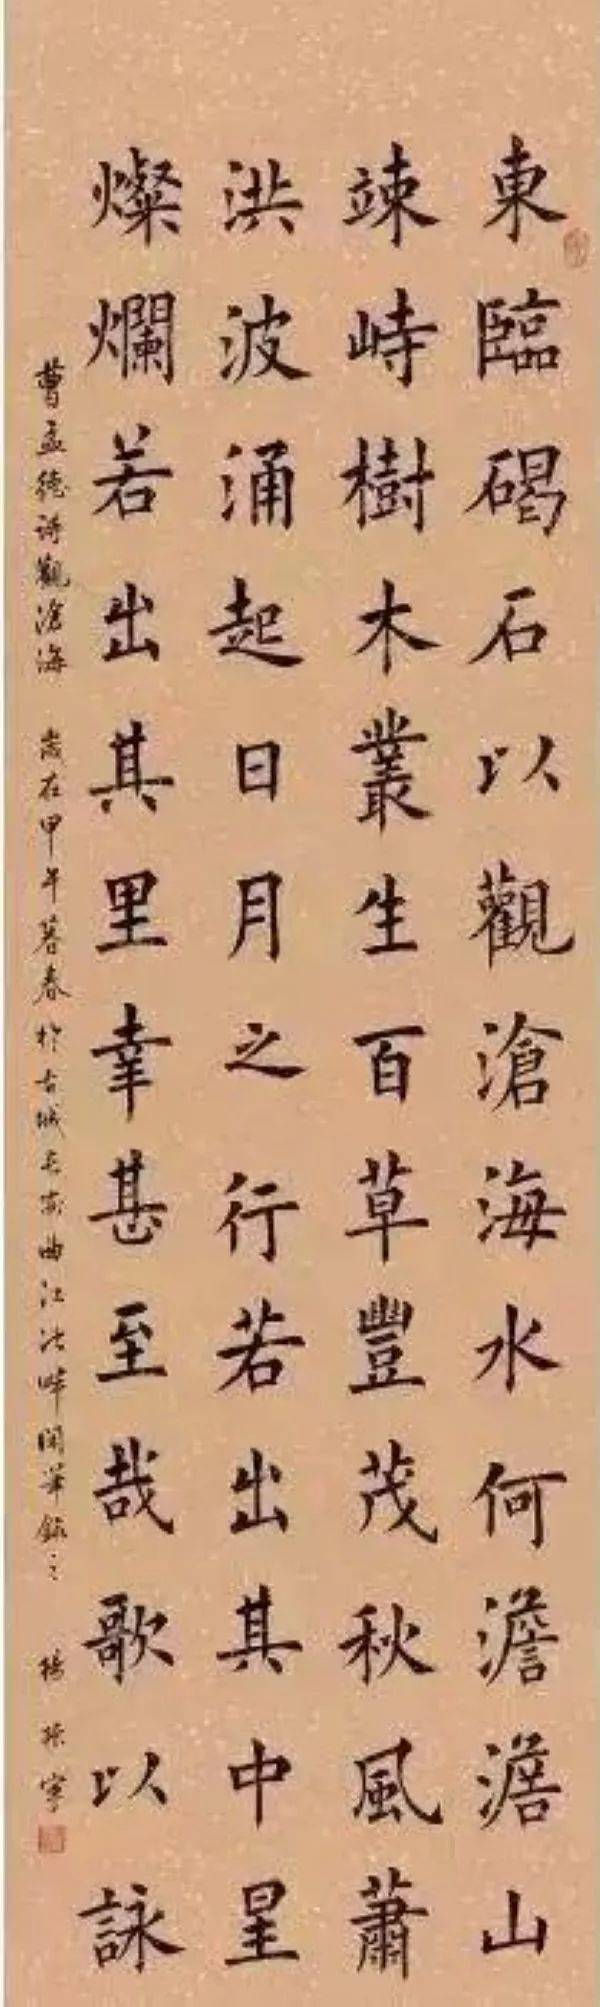 这是杨振宁写的楷书,意不意外?